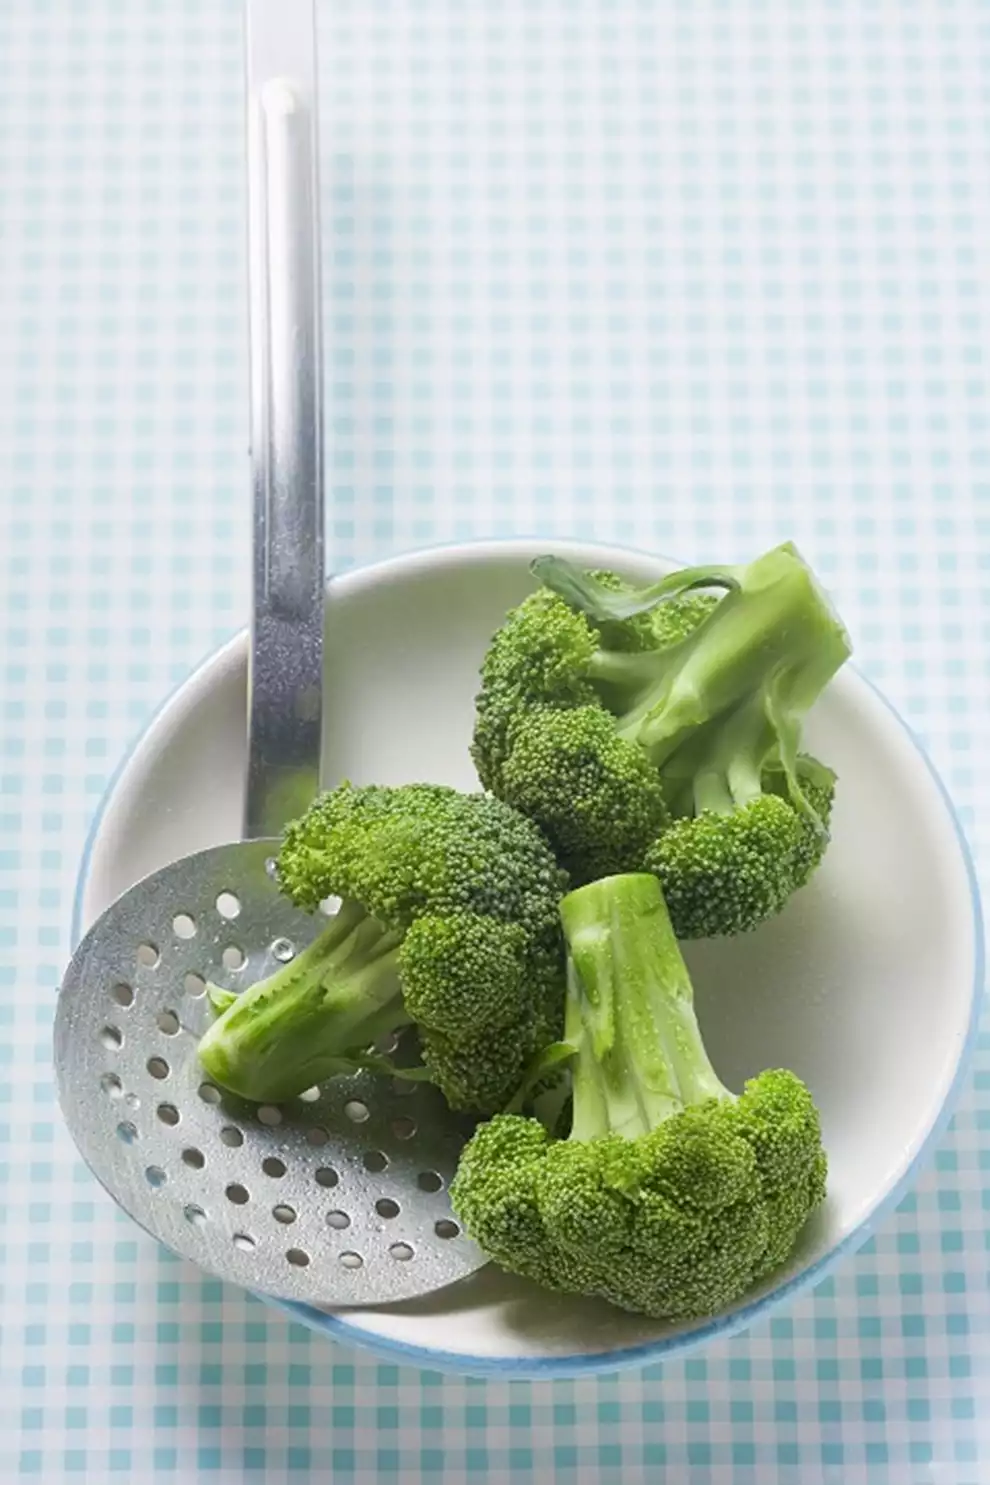 Tiempo de cocción del brócoli